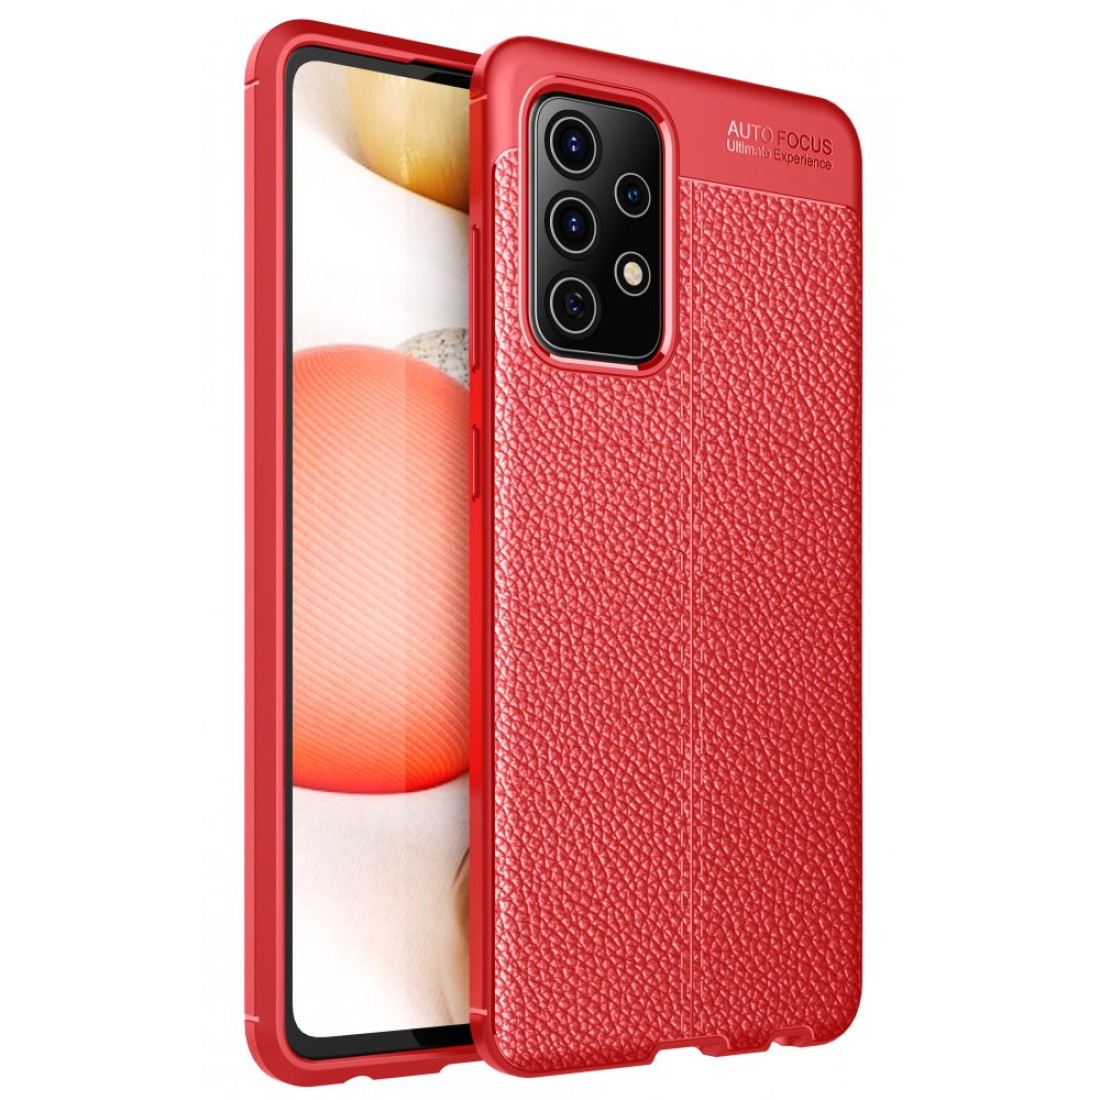 Samsung Galaxy A52 Kılıf Focus Derili Silikon - Kırmızı